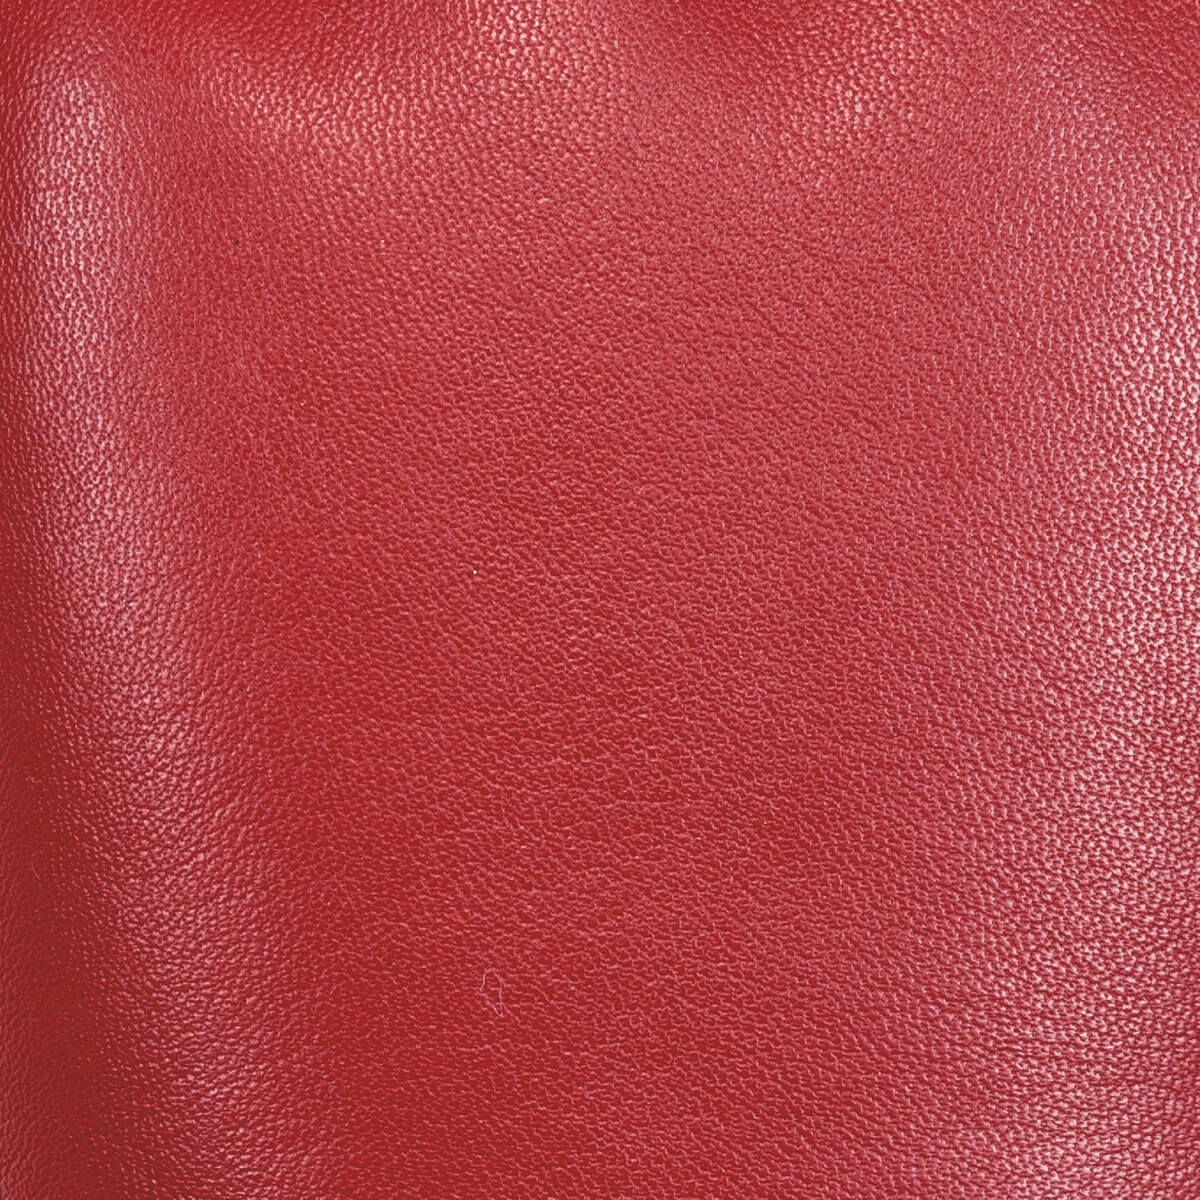 Red Leather Gloves Women Bardot - Schwartz & von Halen® - Premium Leather Gloves - 4